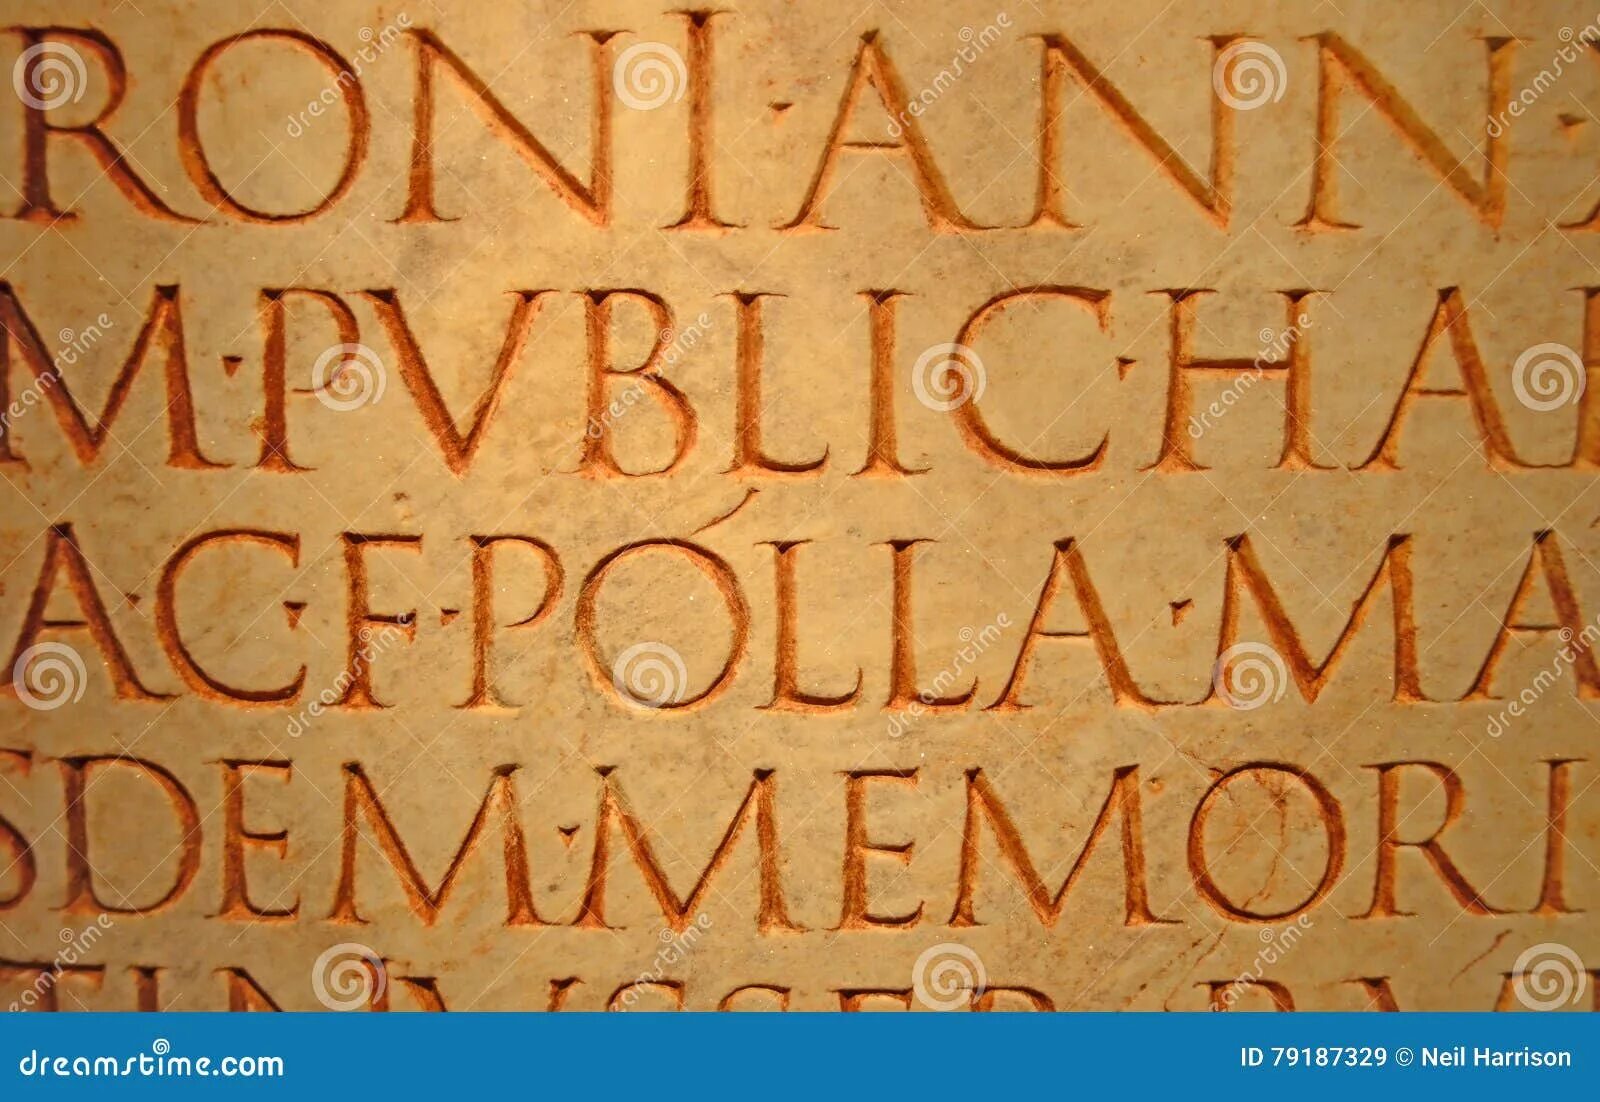 В древнем риме под словом. Античный шрифт. Древние надписи на латыни. Римская письменность. Римское монументальное письмо.